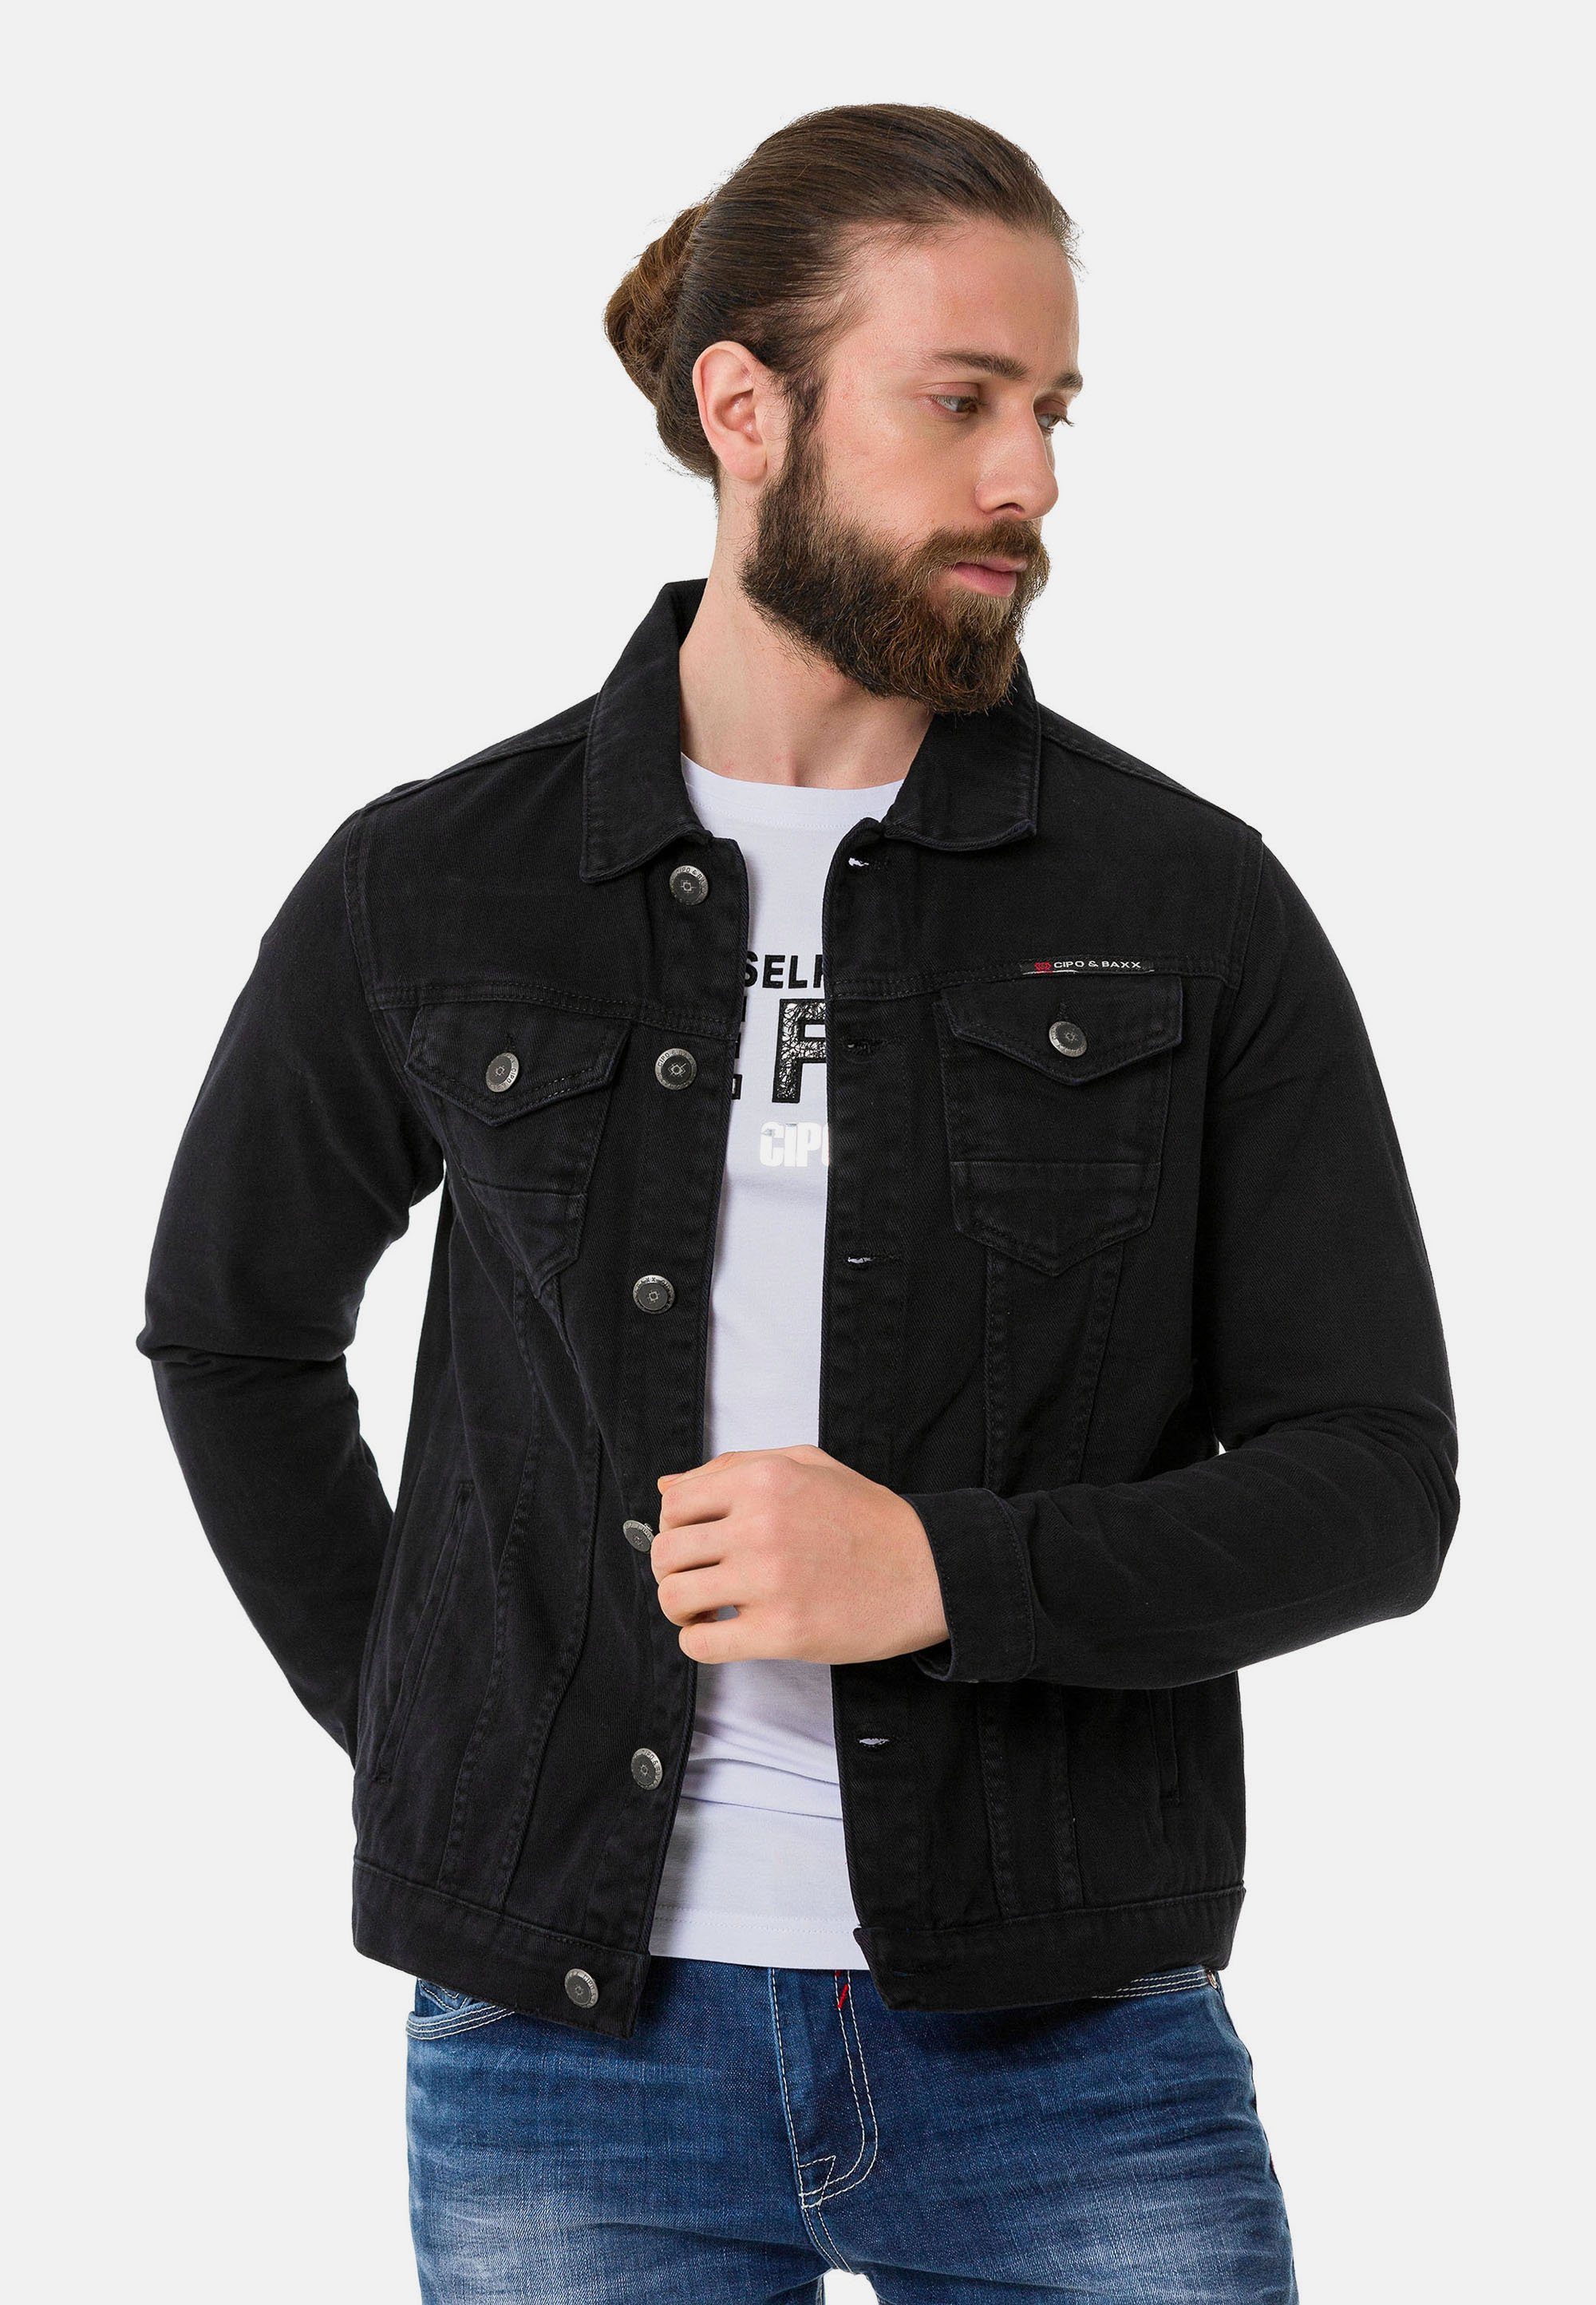 Baxx aufgesetzten mit Brusttaschen Jeansjacke & schwarz-grau Cipo